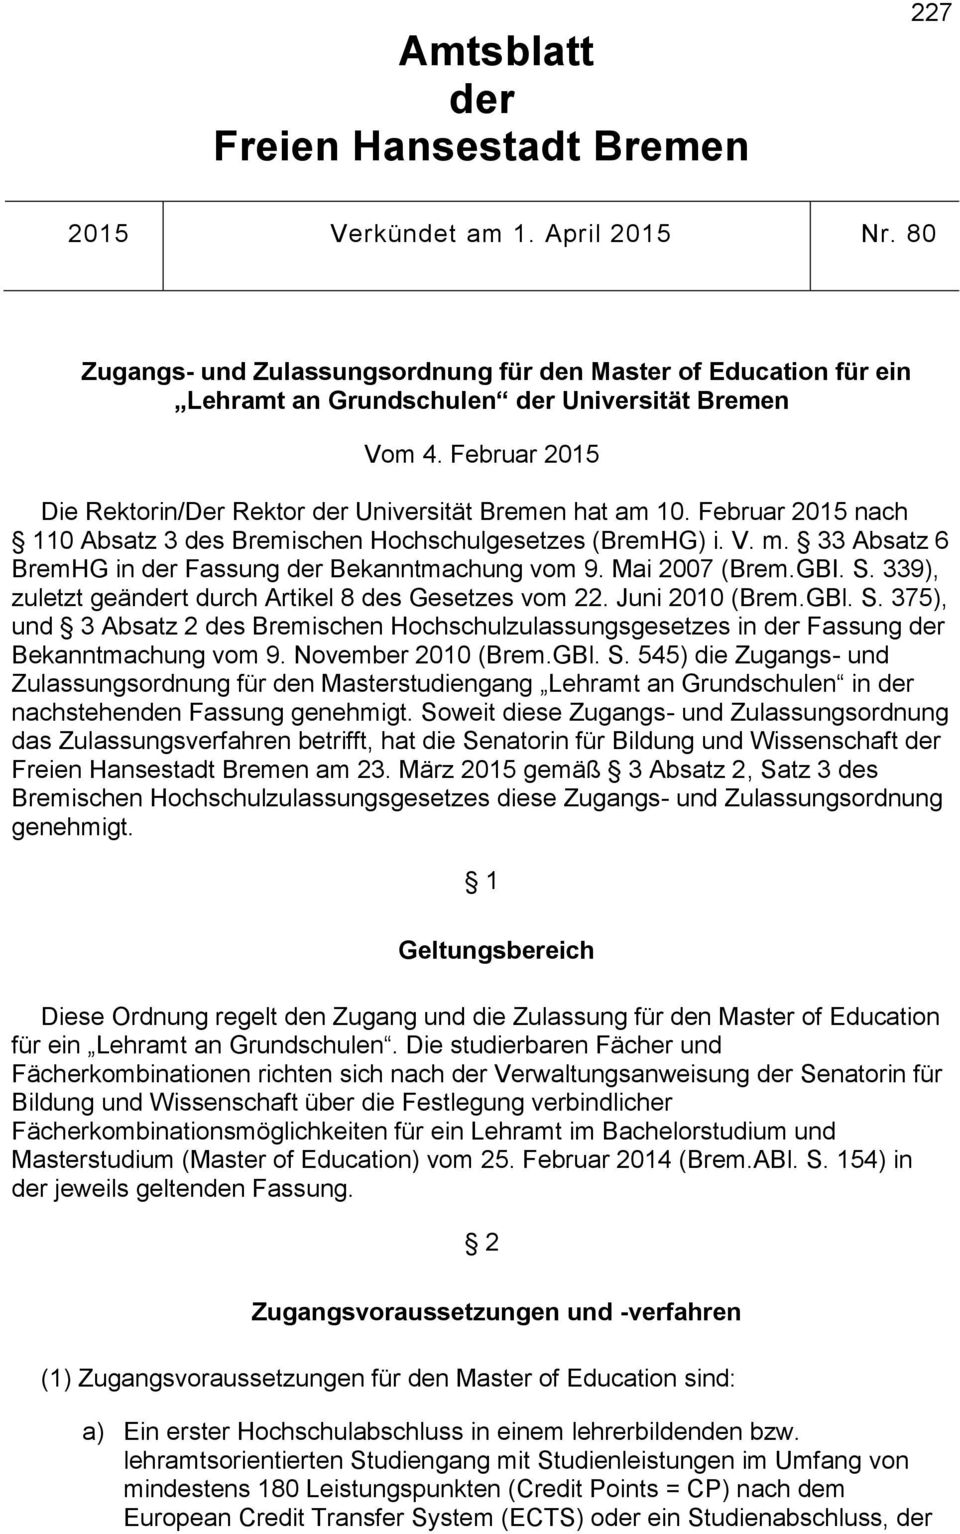 Februar 2015 nach 110 Absatz 3 des Bremischen Hochschulgesetzes (BremHG) i. V. m. 33 Absatz 6 BremHG in der Fassung der Bekanntmachung vom 9. Mai 2007 (Brem.GBI. S.